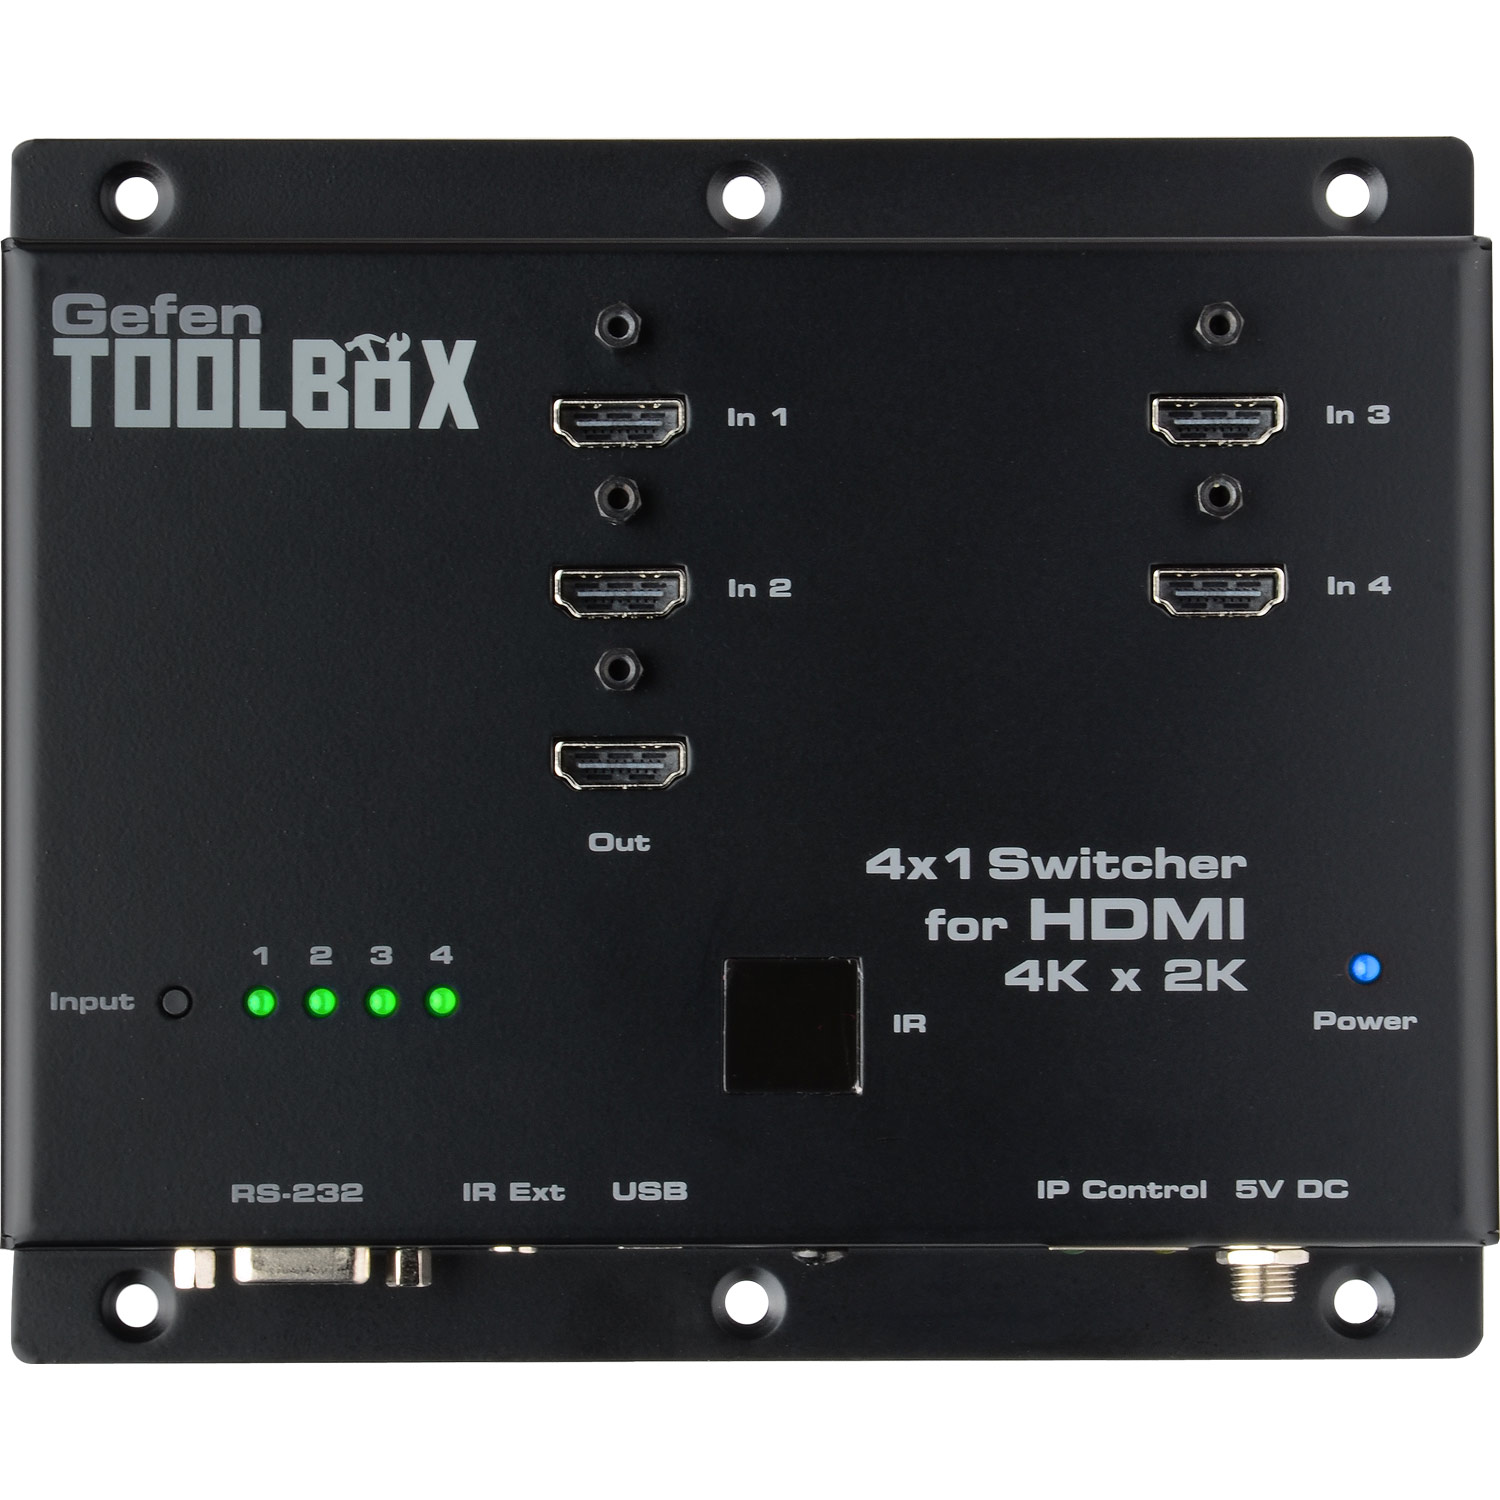 4x1 Switcher for HDMI 4K x 2K | Gefen